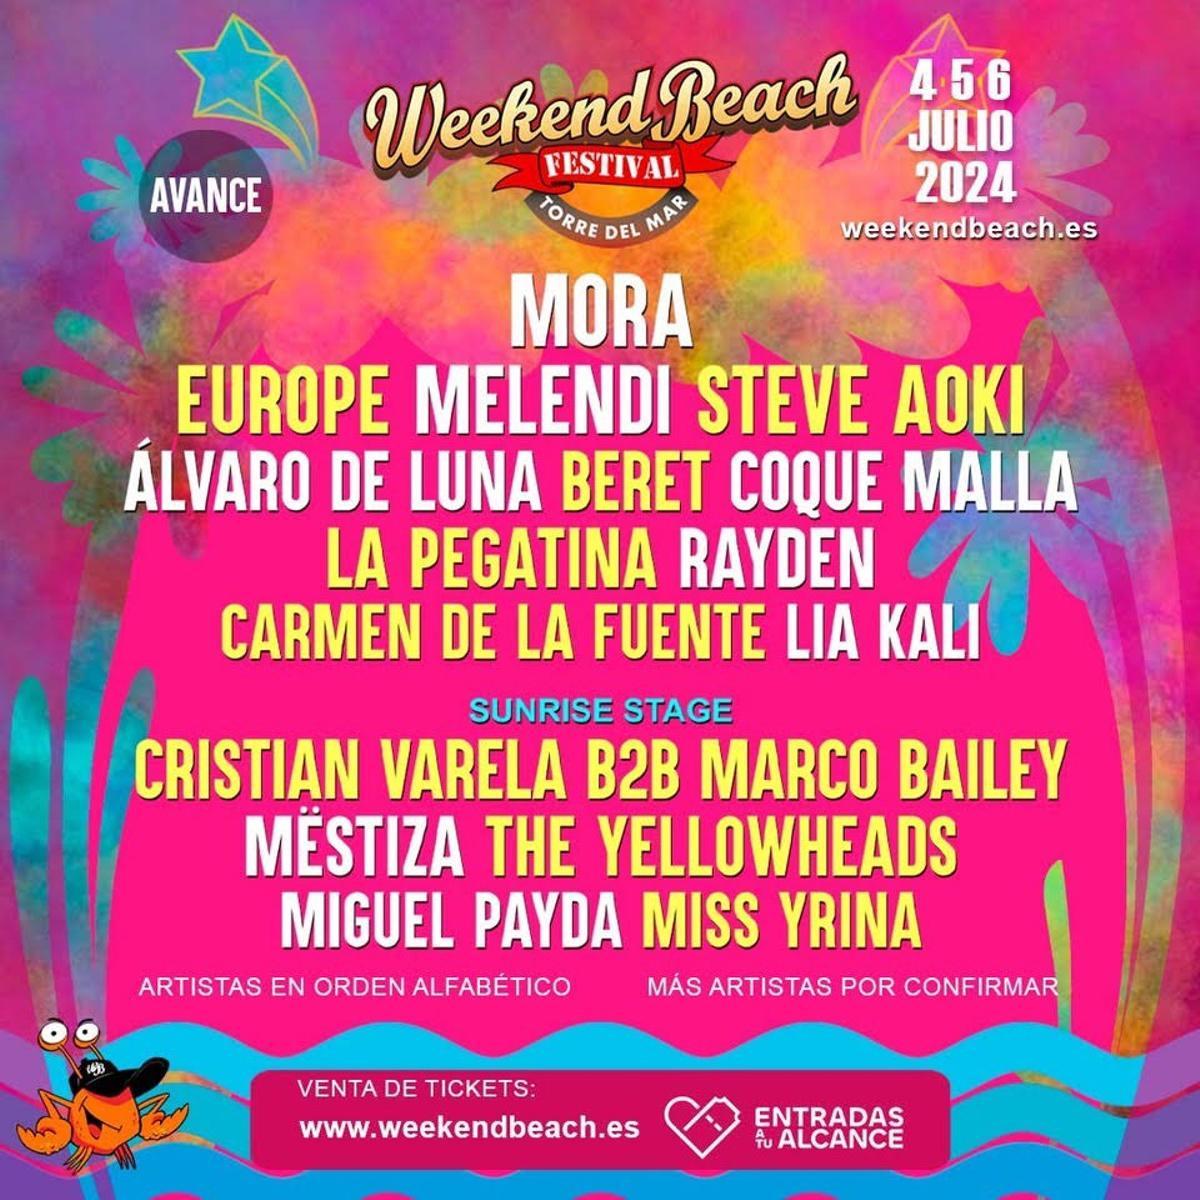 Cartel del Weekend Beach Festival Torre del Mar, cuyas nuevas confirmaciones se han dado a conocer en el marco de la Feria Internacional de Turismo, Fitur, que se celebra en Madrid.